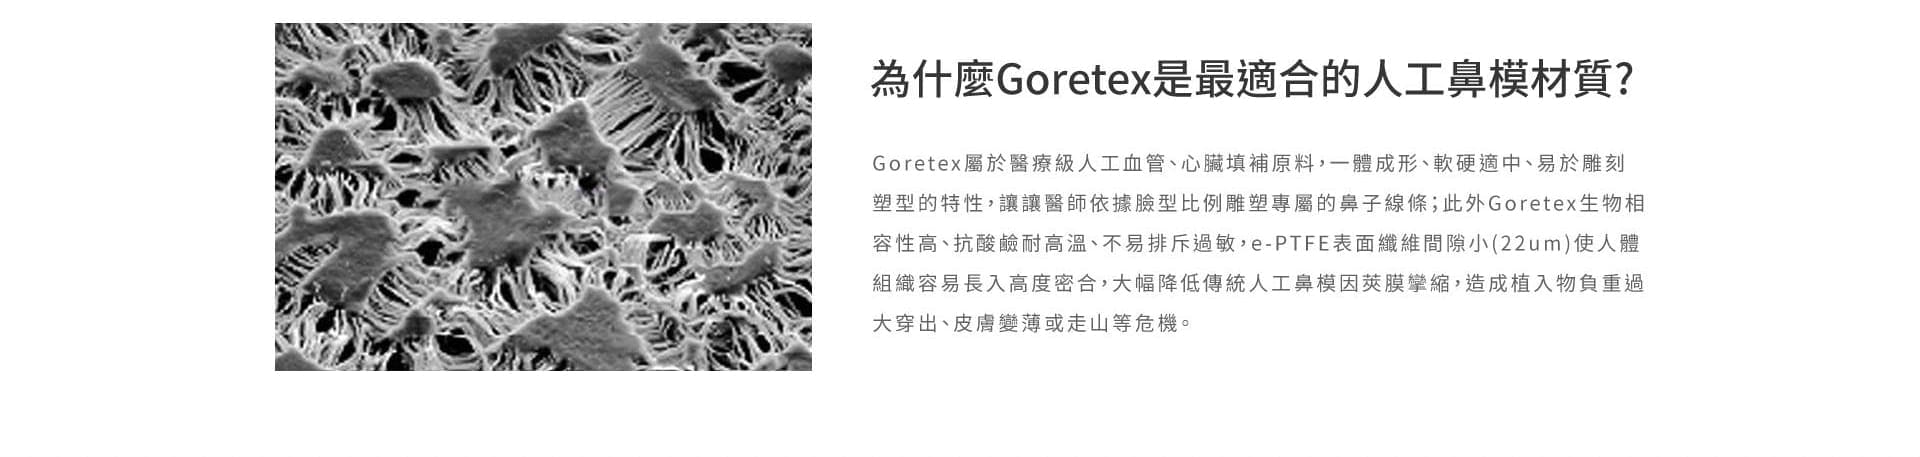 為什麼Goretex是最適合的人工鼻模材質